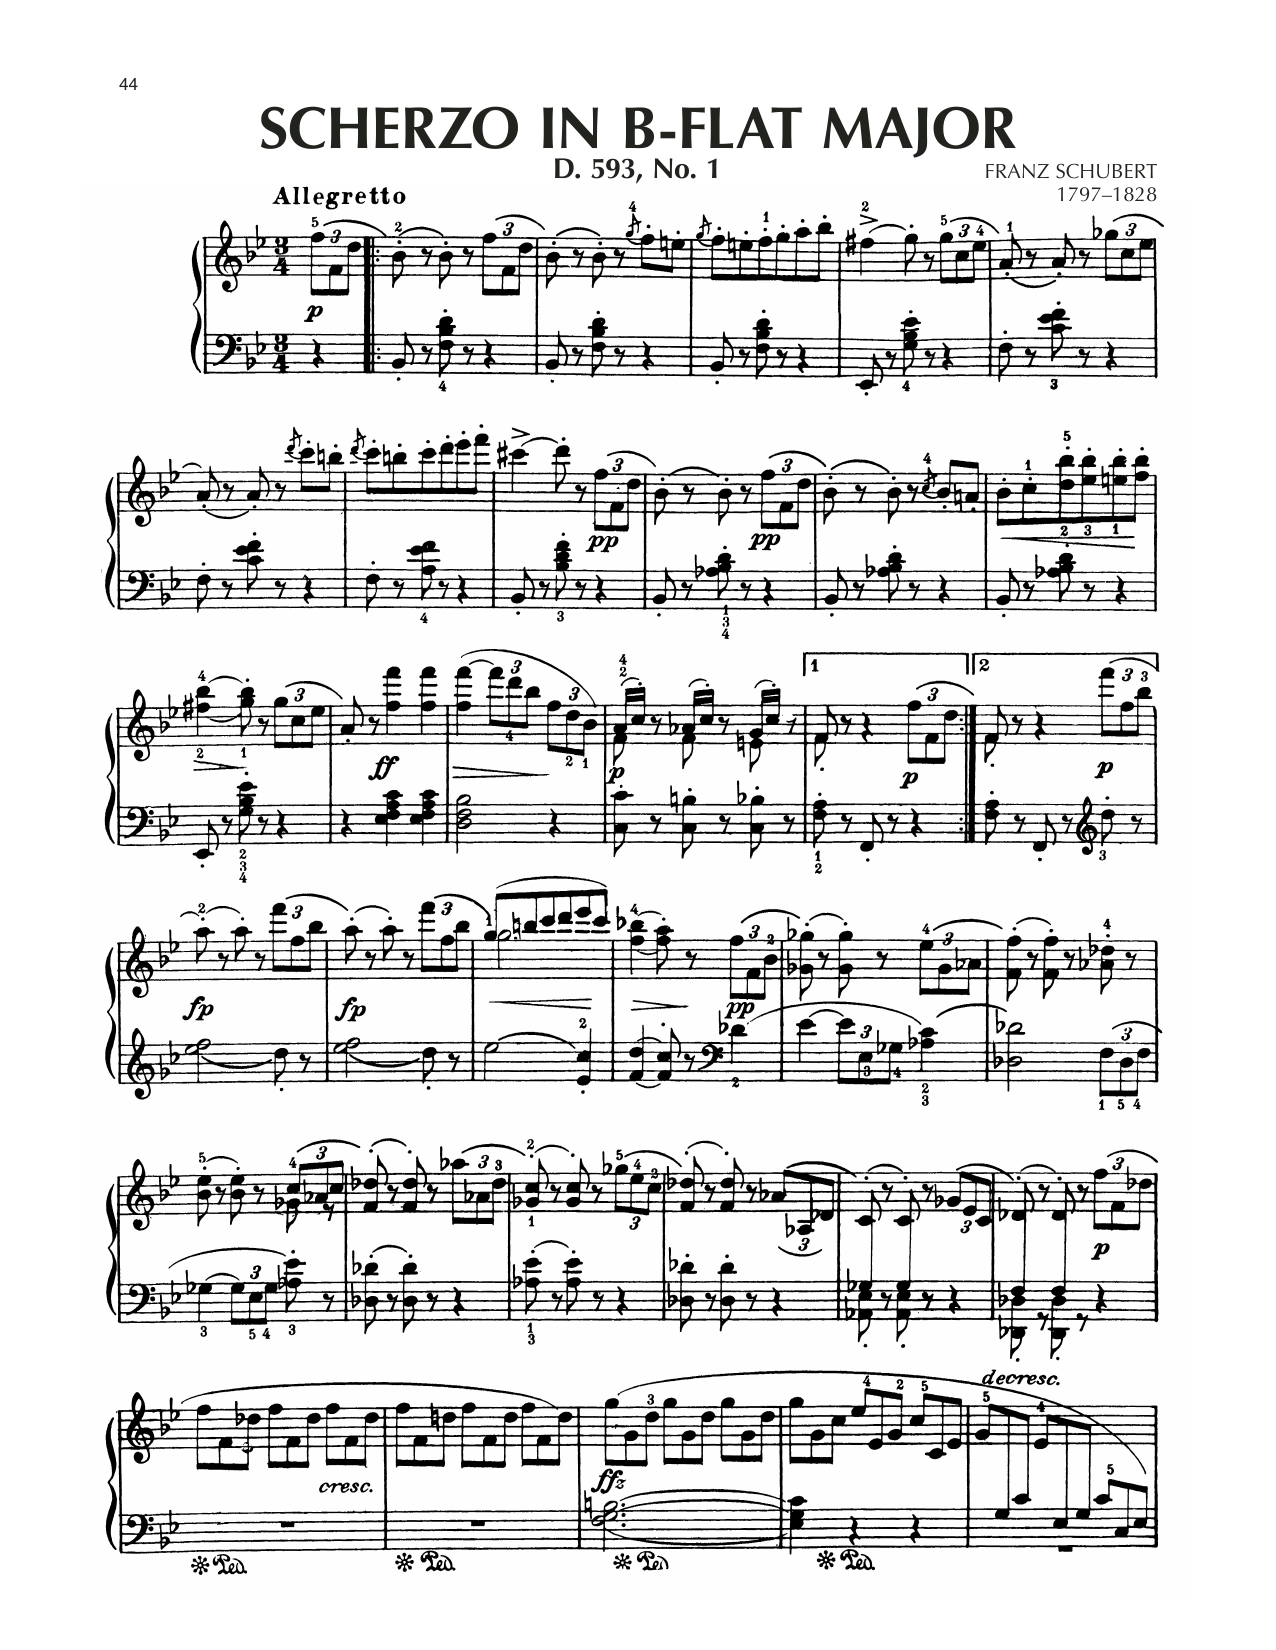 Download Franz Schubert Scherzo In B-Flat Major, D. 593, No. 1 Sheet Music